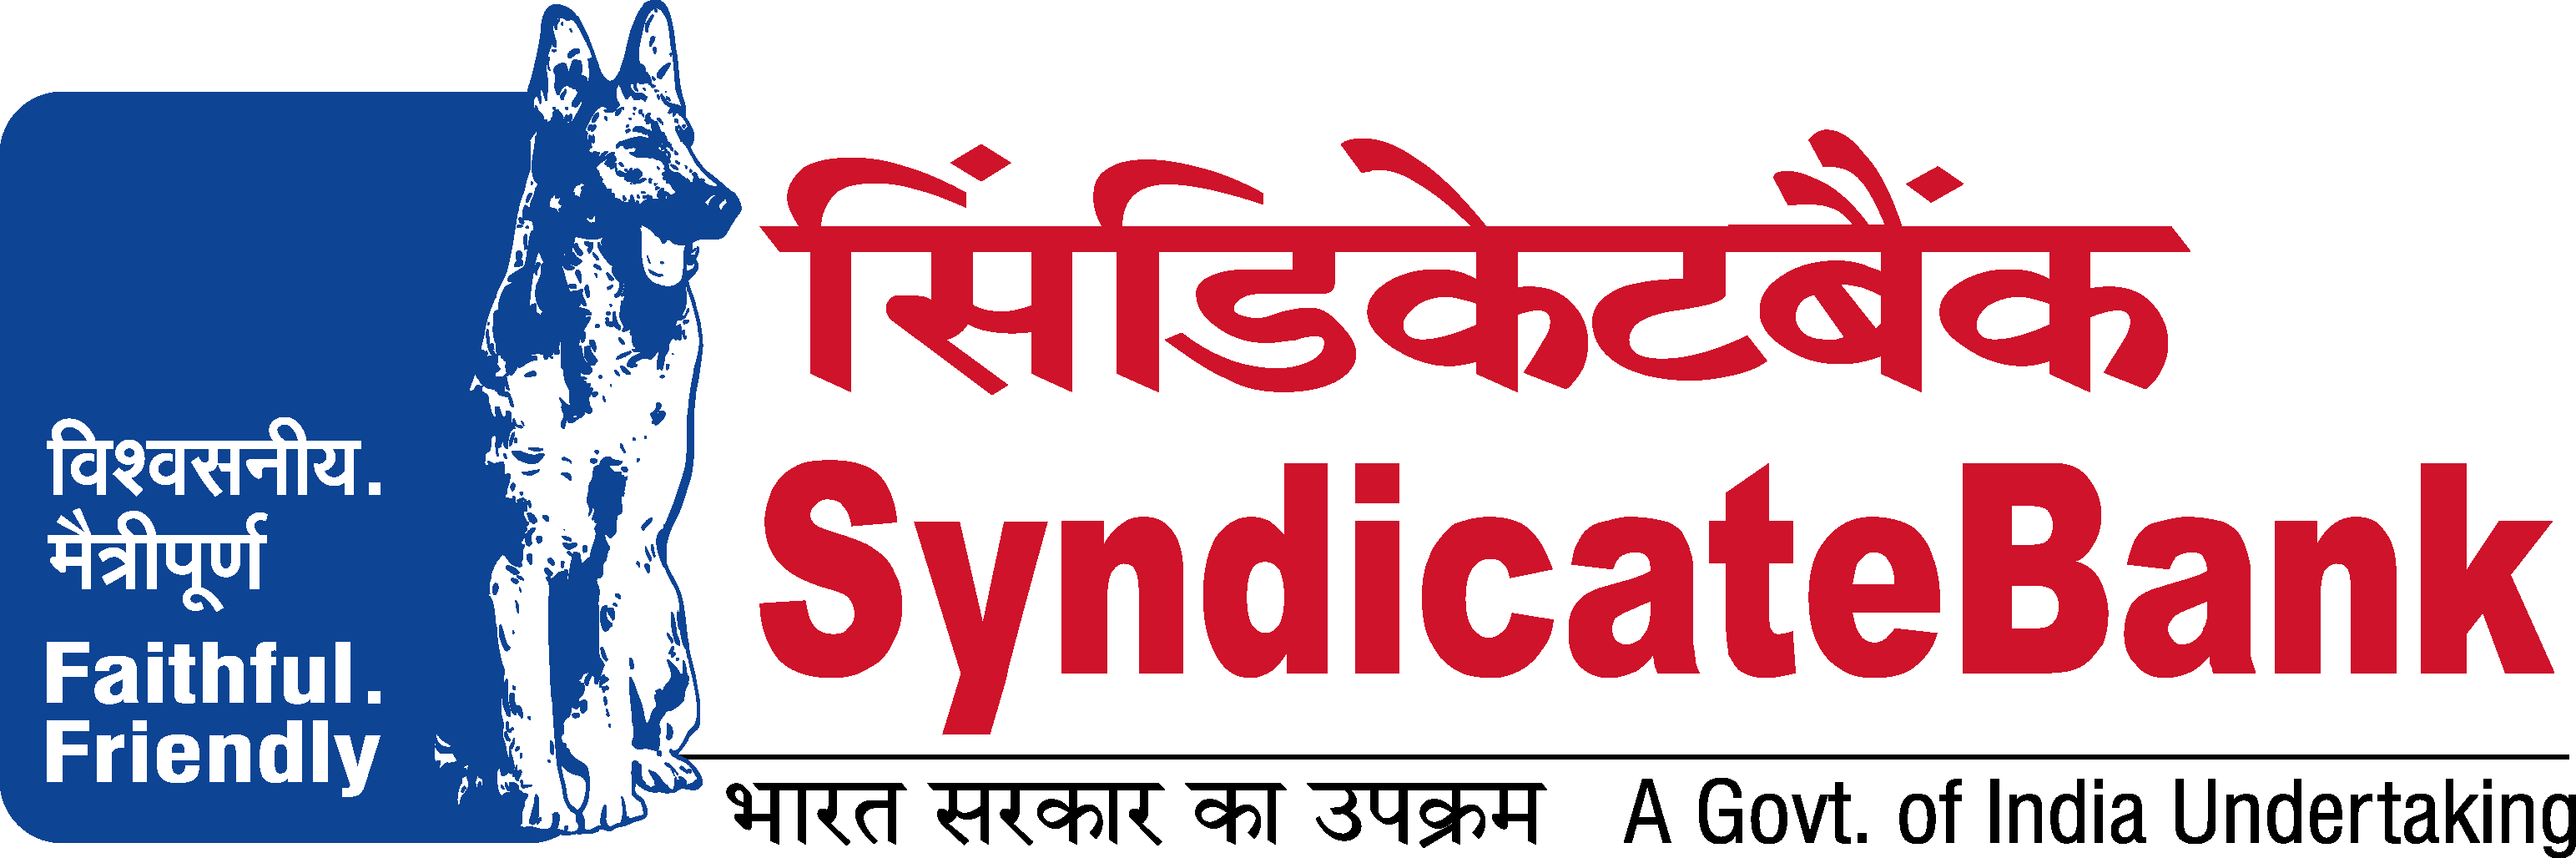 Syndicate Bank Logo